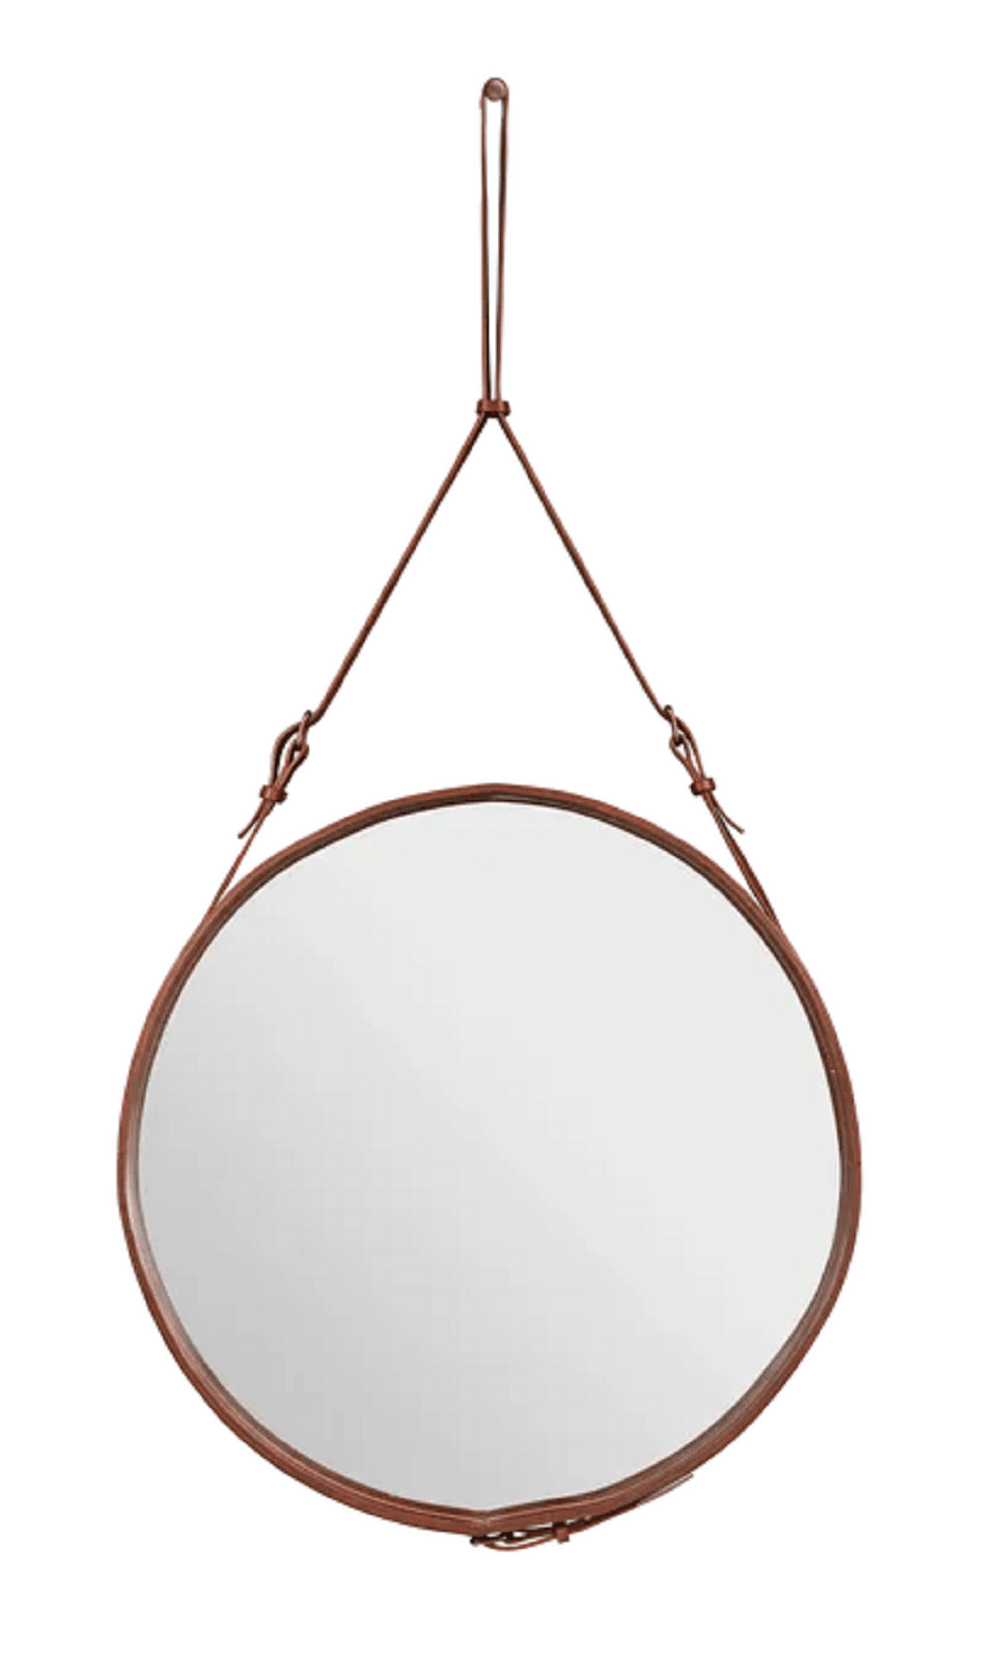 Gubi Adnet Spiegel Circulaire - runder Spiegel - Durchmesser 70 cm - Tan Leather--10